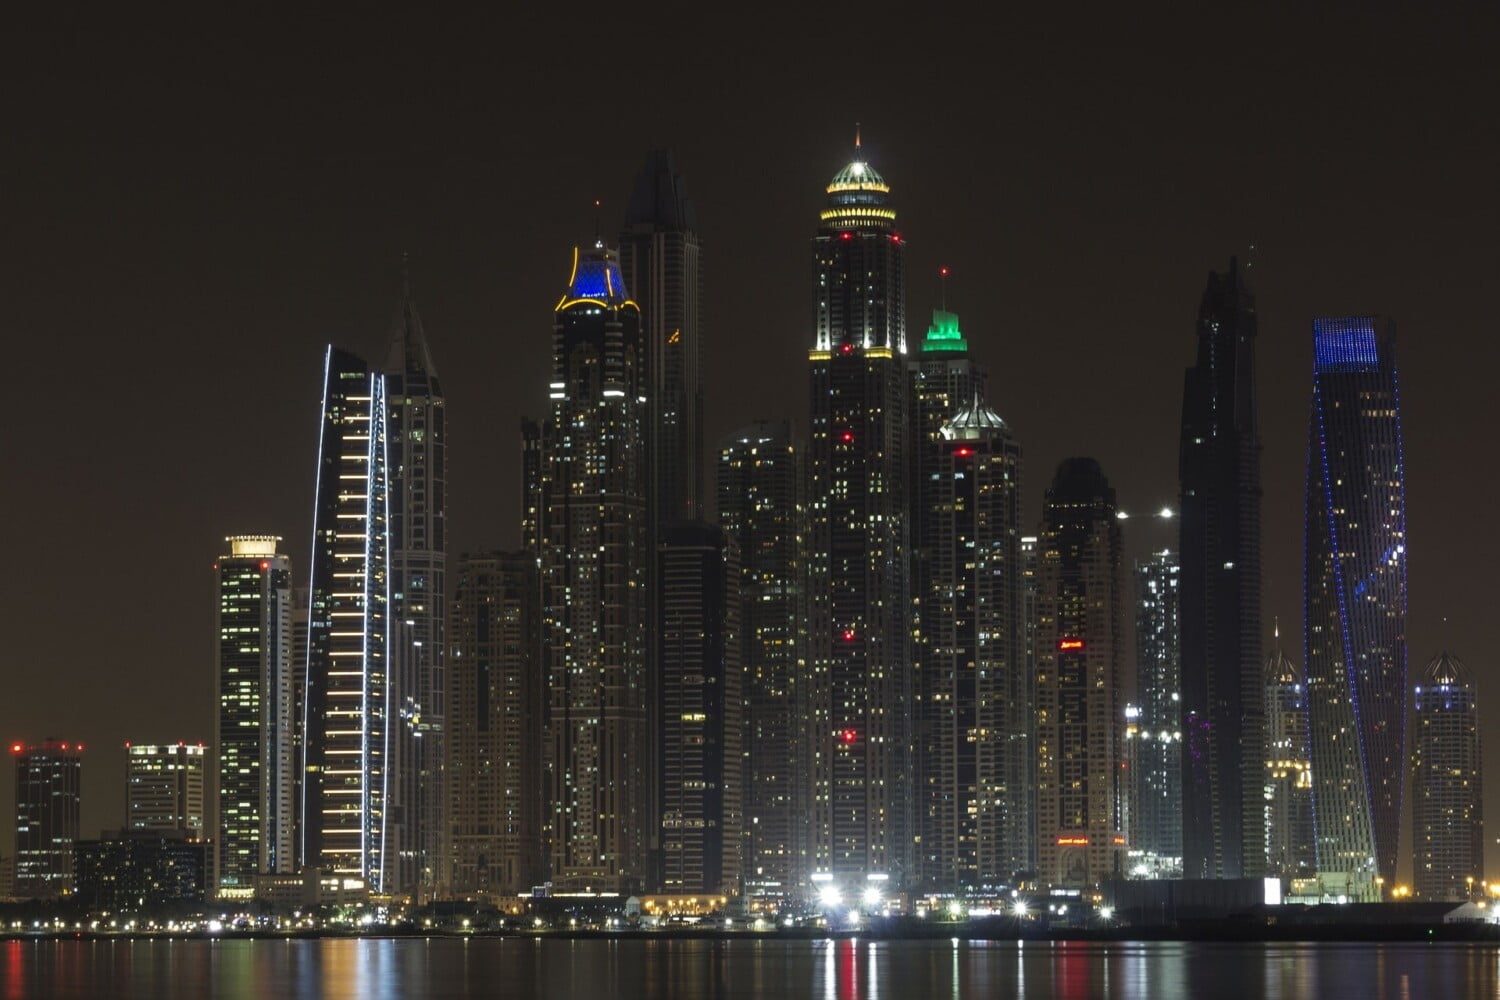 Dubai by Night Tour with Burj Khalifa Ticket